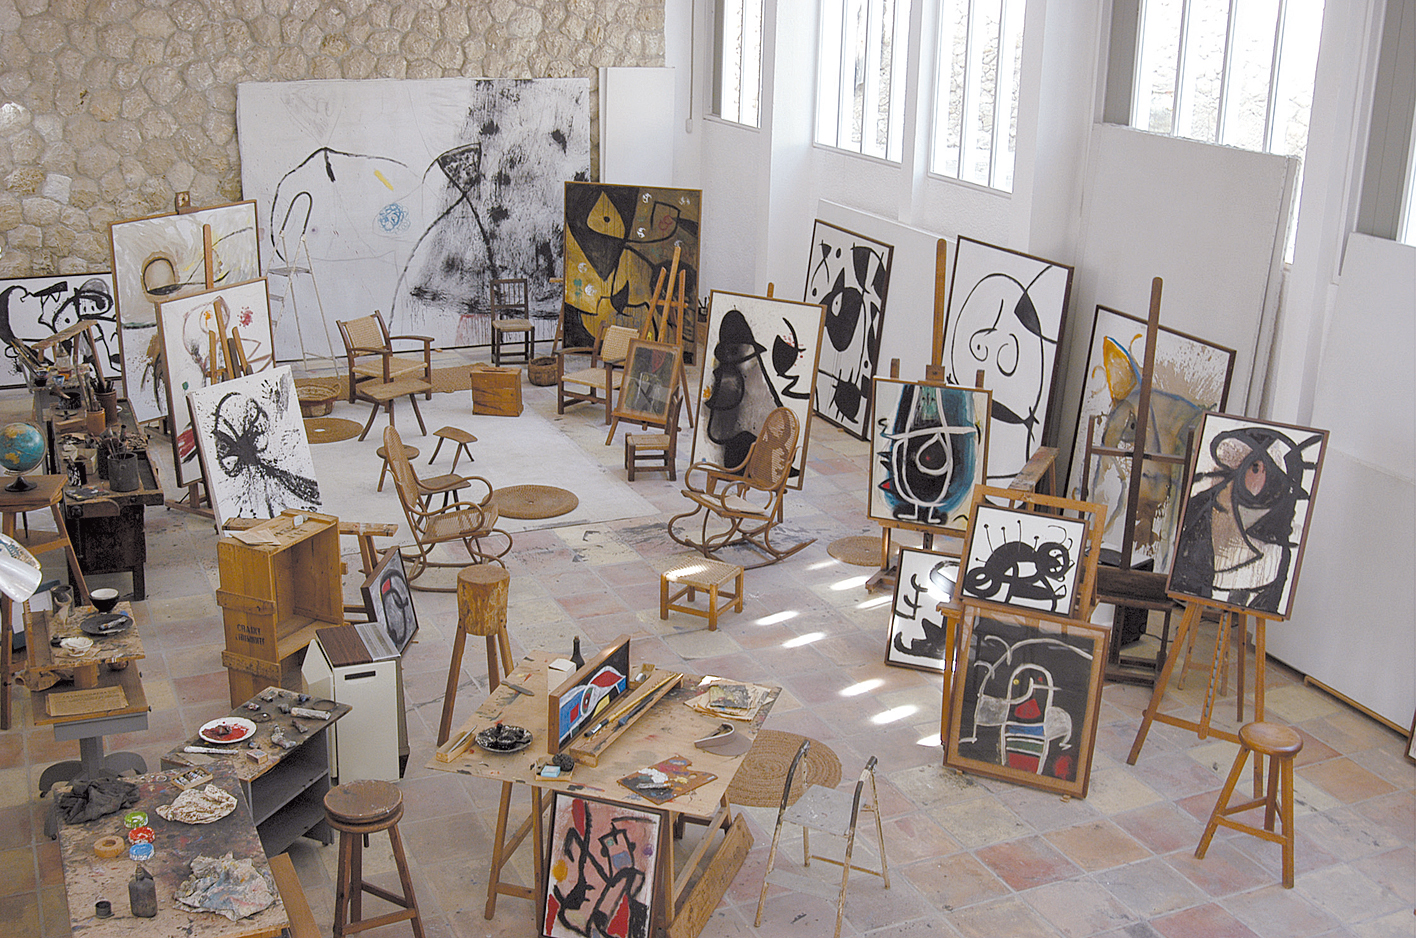 Fundació Miró in Mallorca